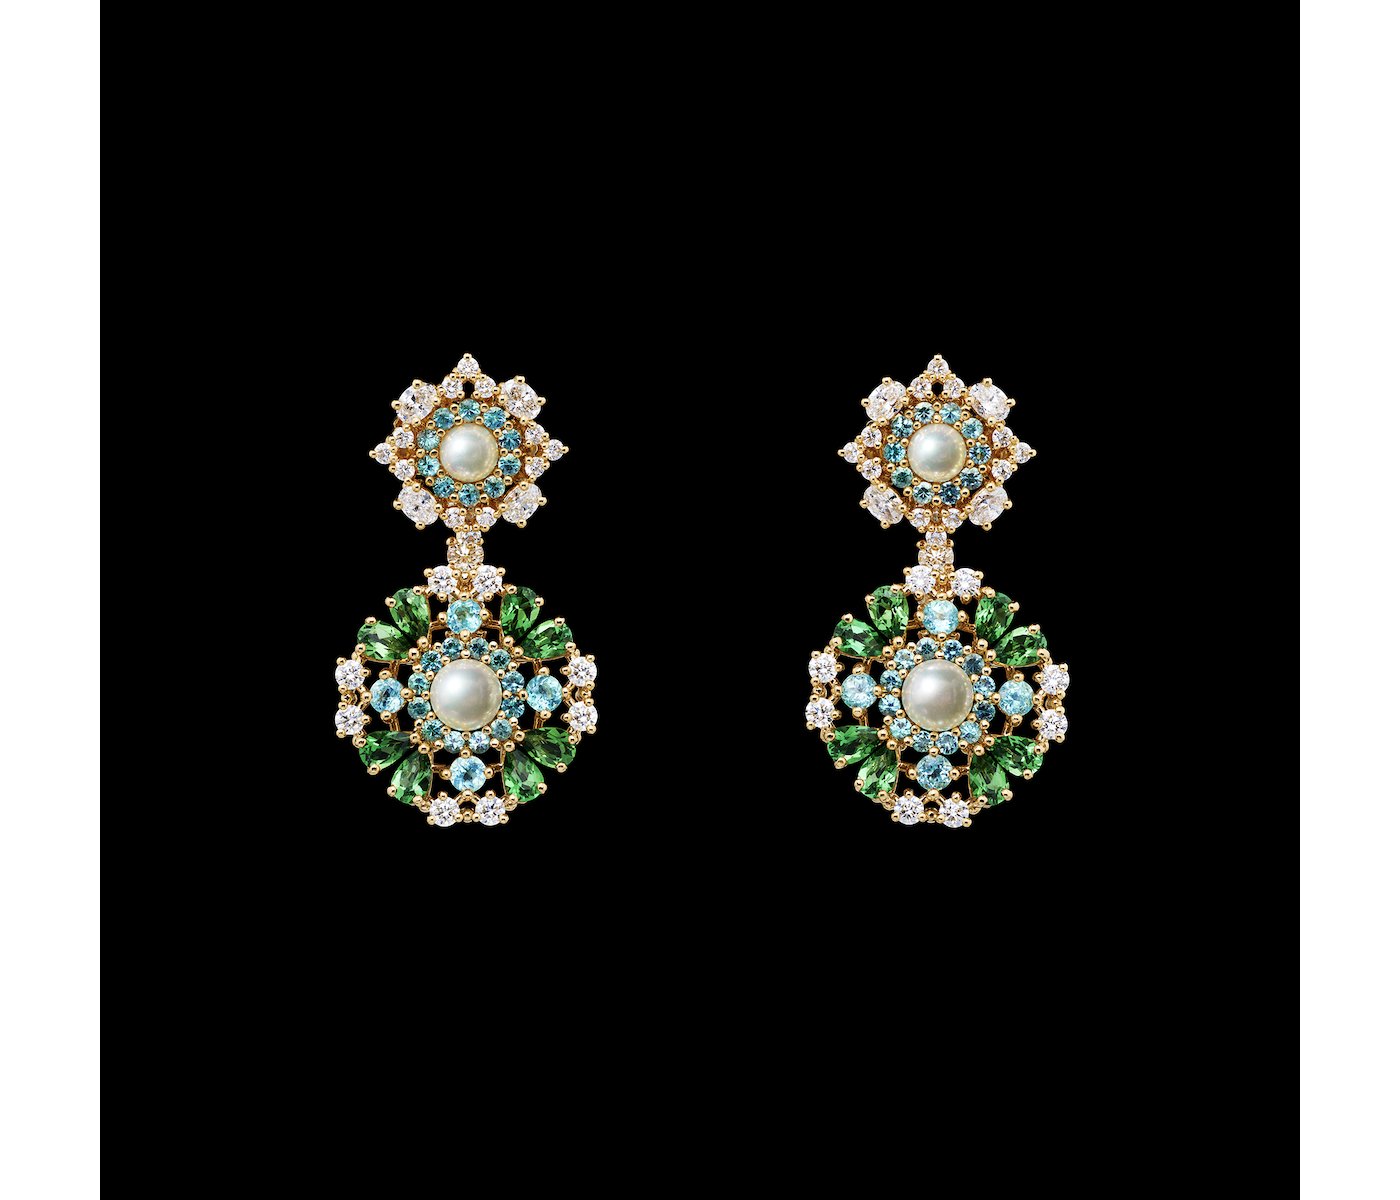 Earrings by Dior 